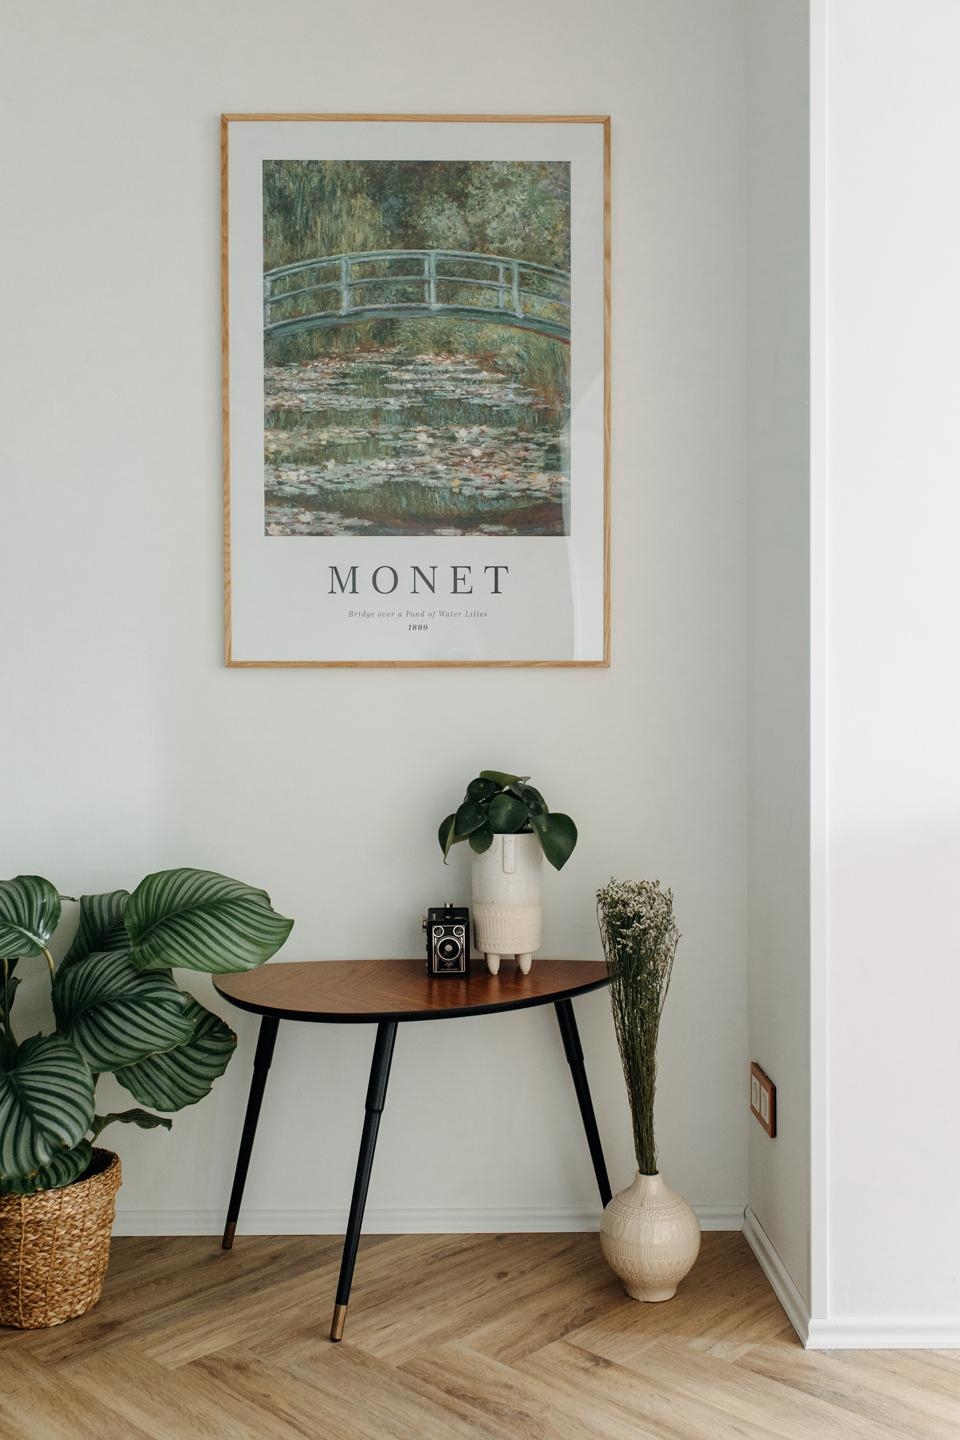 Große Monet-Liebe nun im Wohnzimmer :) #wohnzimmer #wandgestaltung #couchliebt #bohostyle #zimmerpflanze